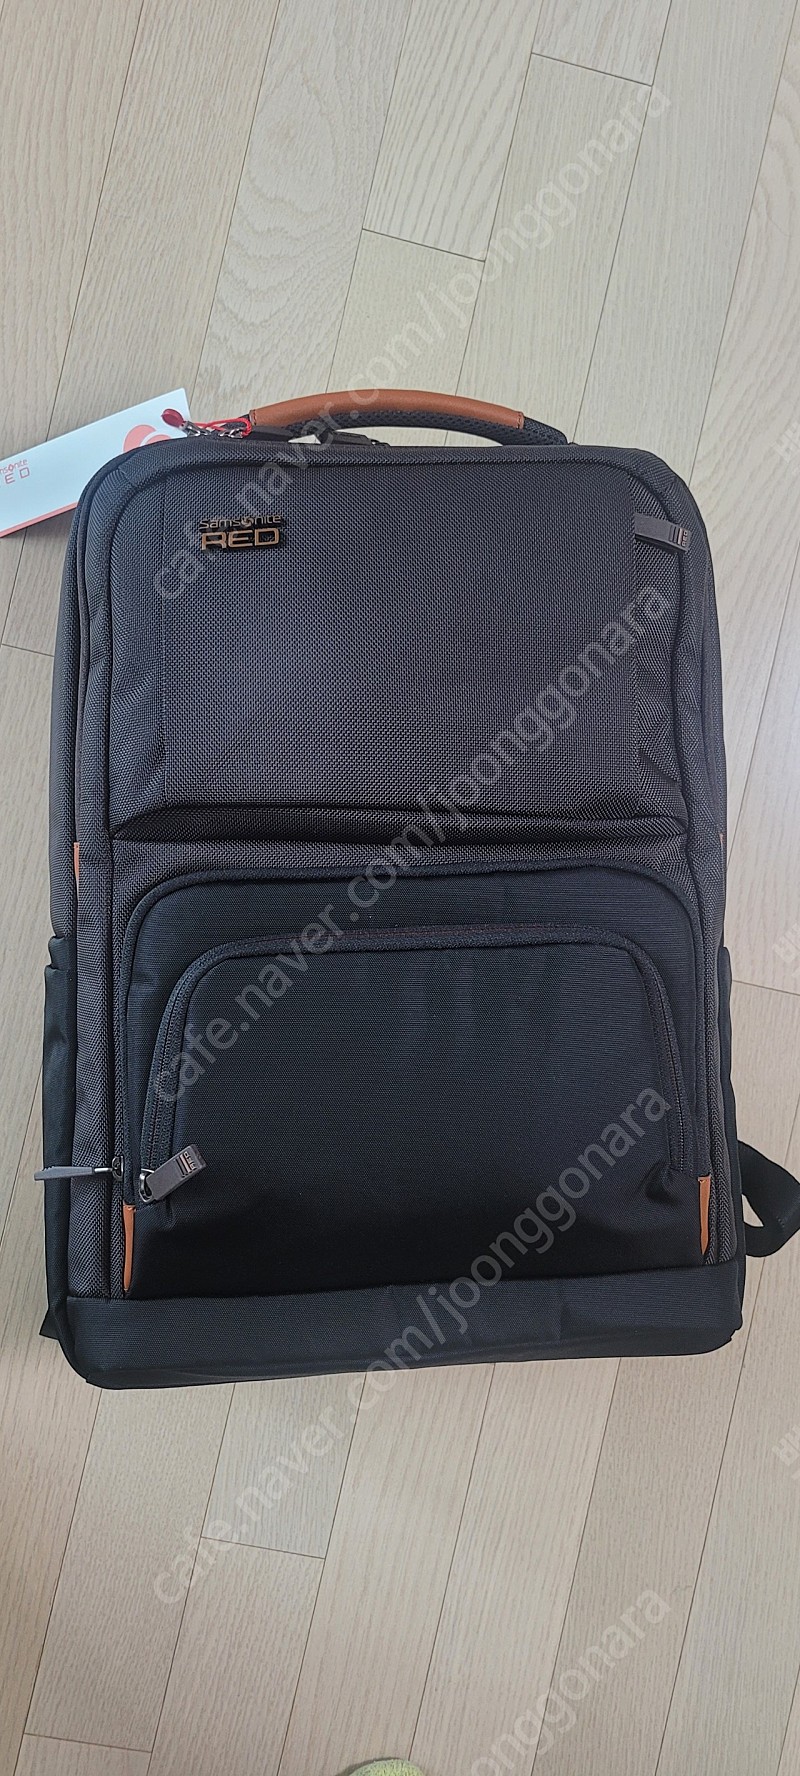 샘소나이트 Red egerton backpack 판매 (미개봉) 가격인하